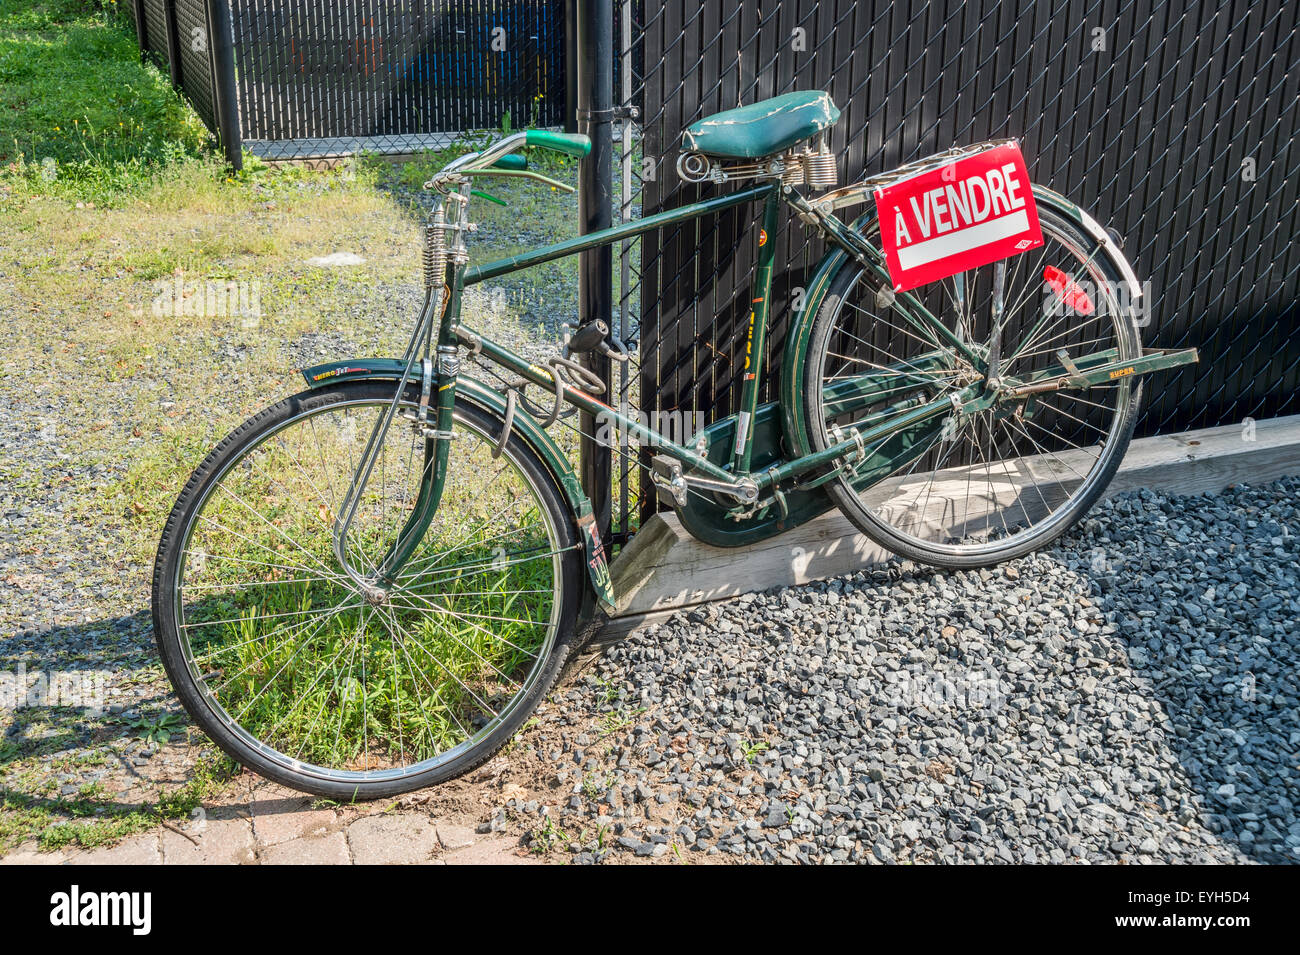 Bici per la vendita, con segno francese 'A vendre', a Montreal Foto Stock